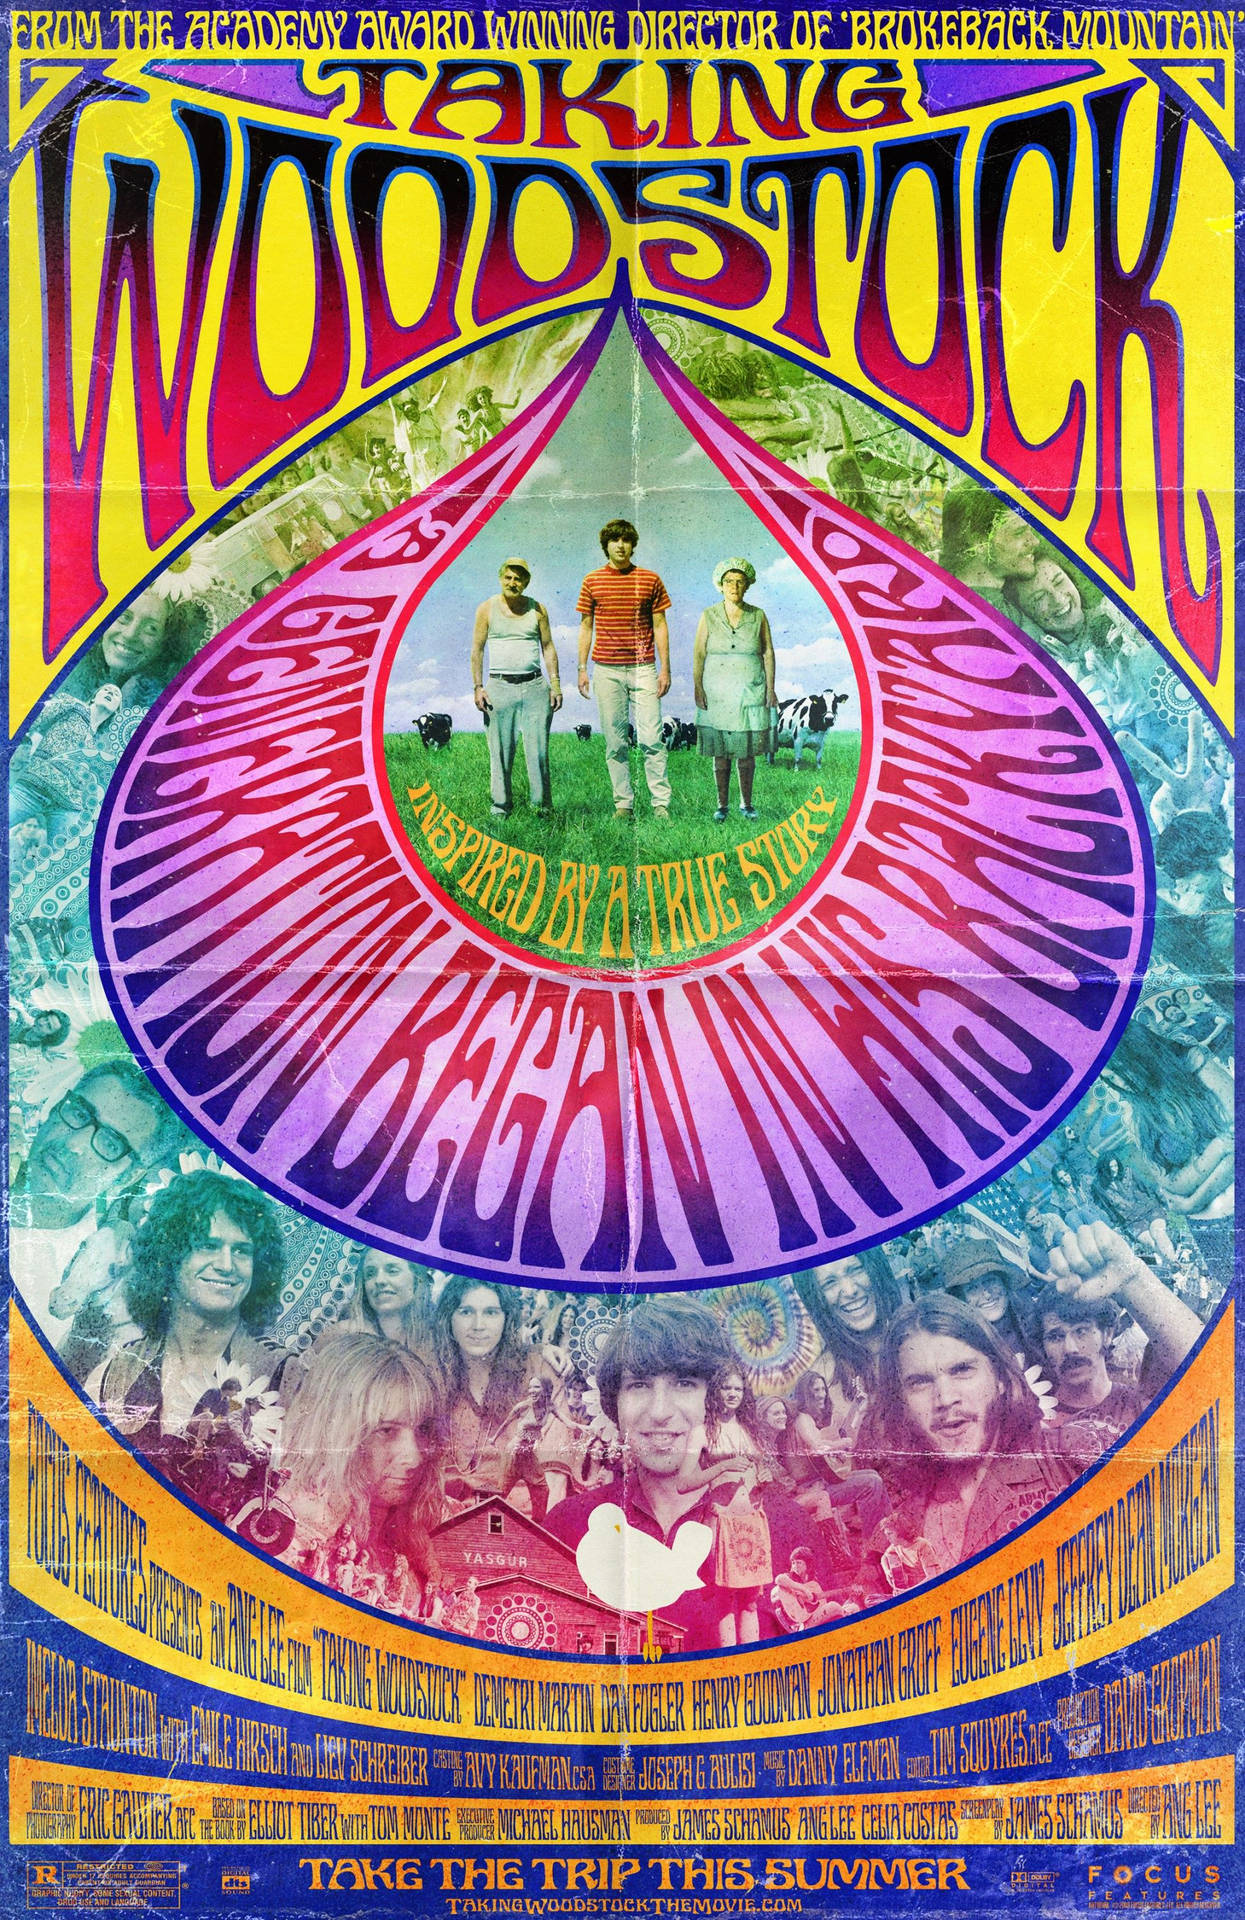 Jagvill Ha En Ny Bakgrundsbild På Min Dator Eller Mobiltelefon. Jag Tror Att Jag Ska Välja Filmpostern För Taking Woodstock. Har Du Några Förslag På Var Jag Kan Hitta Den I Hög Upplösning? Wallpaper